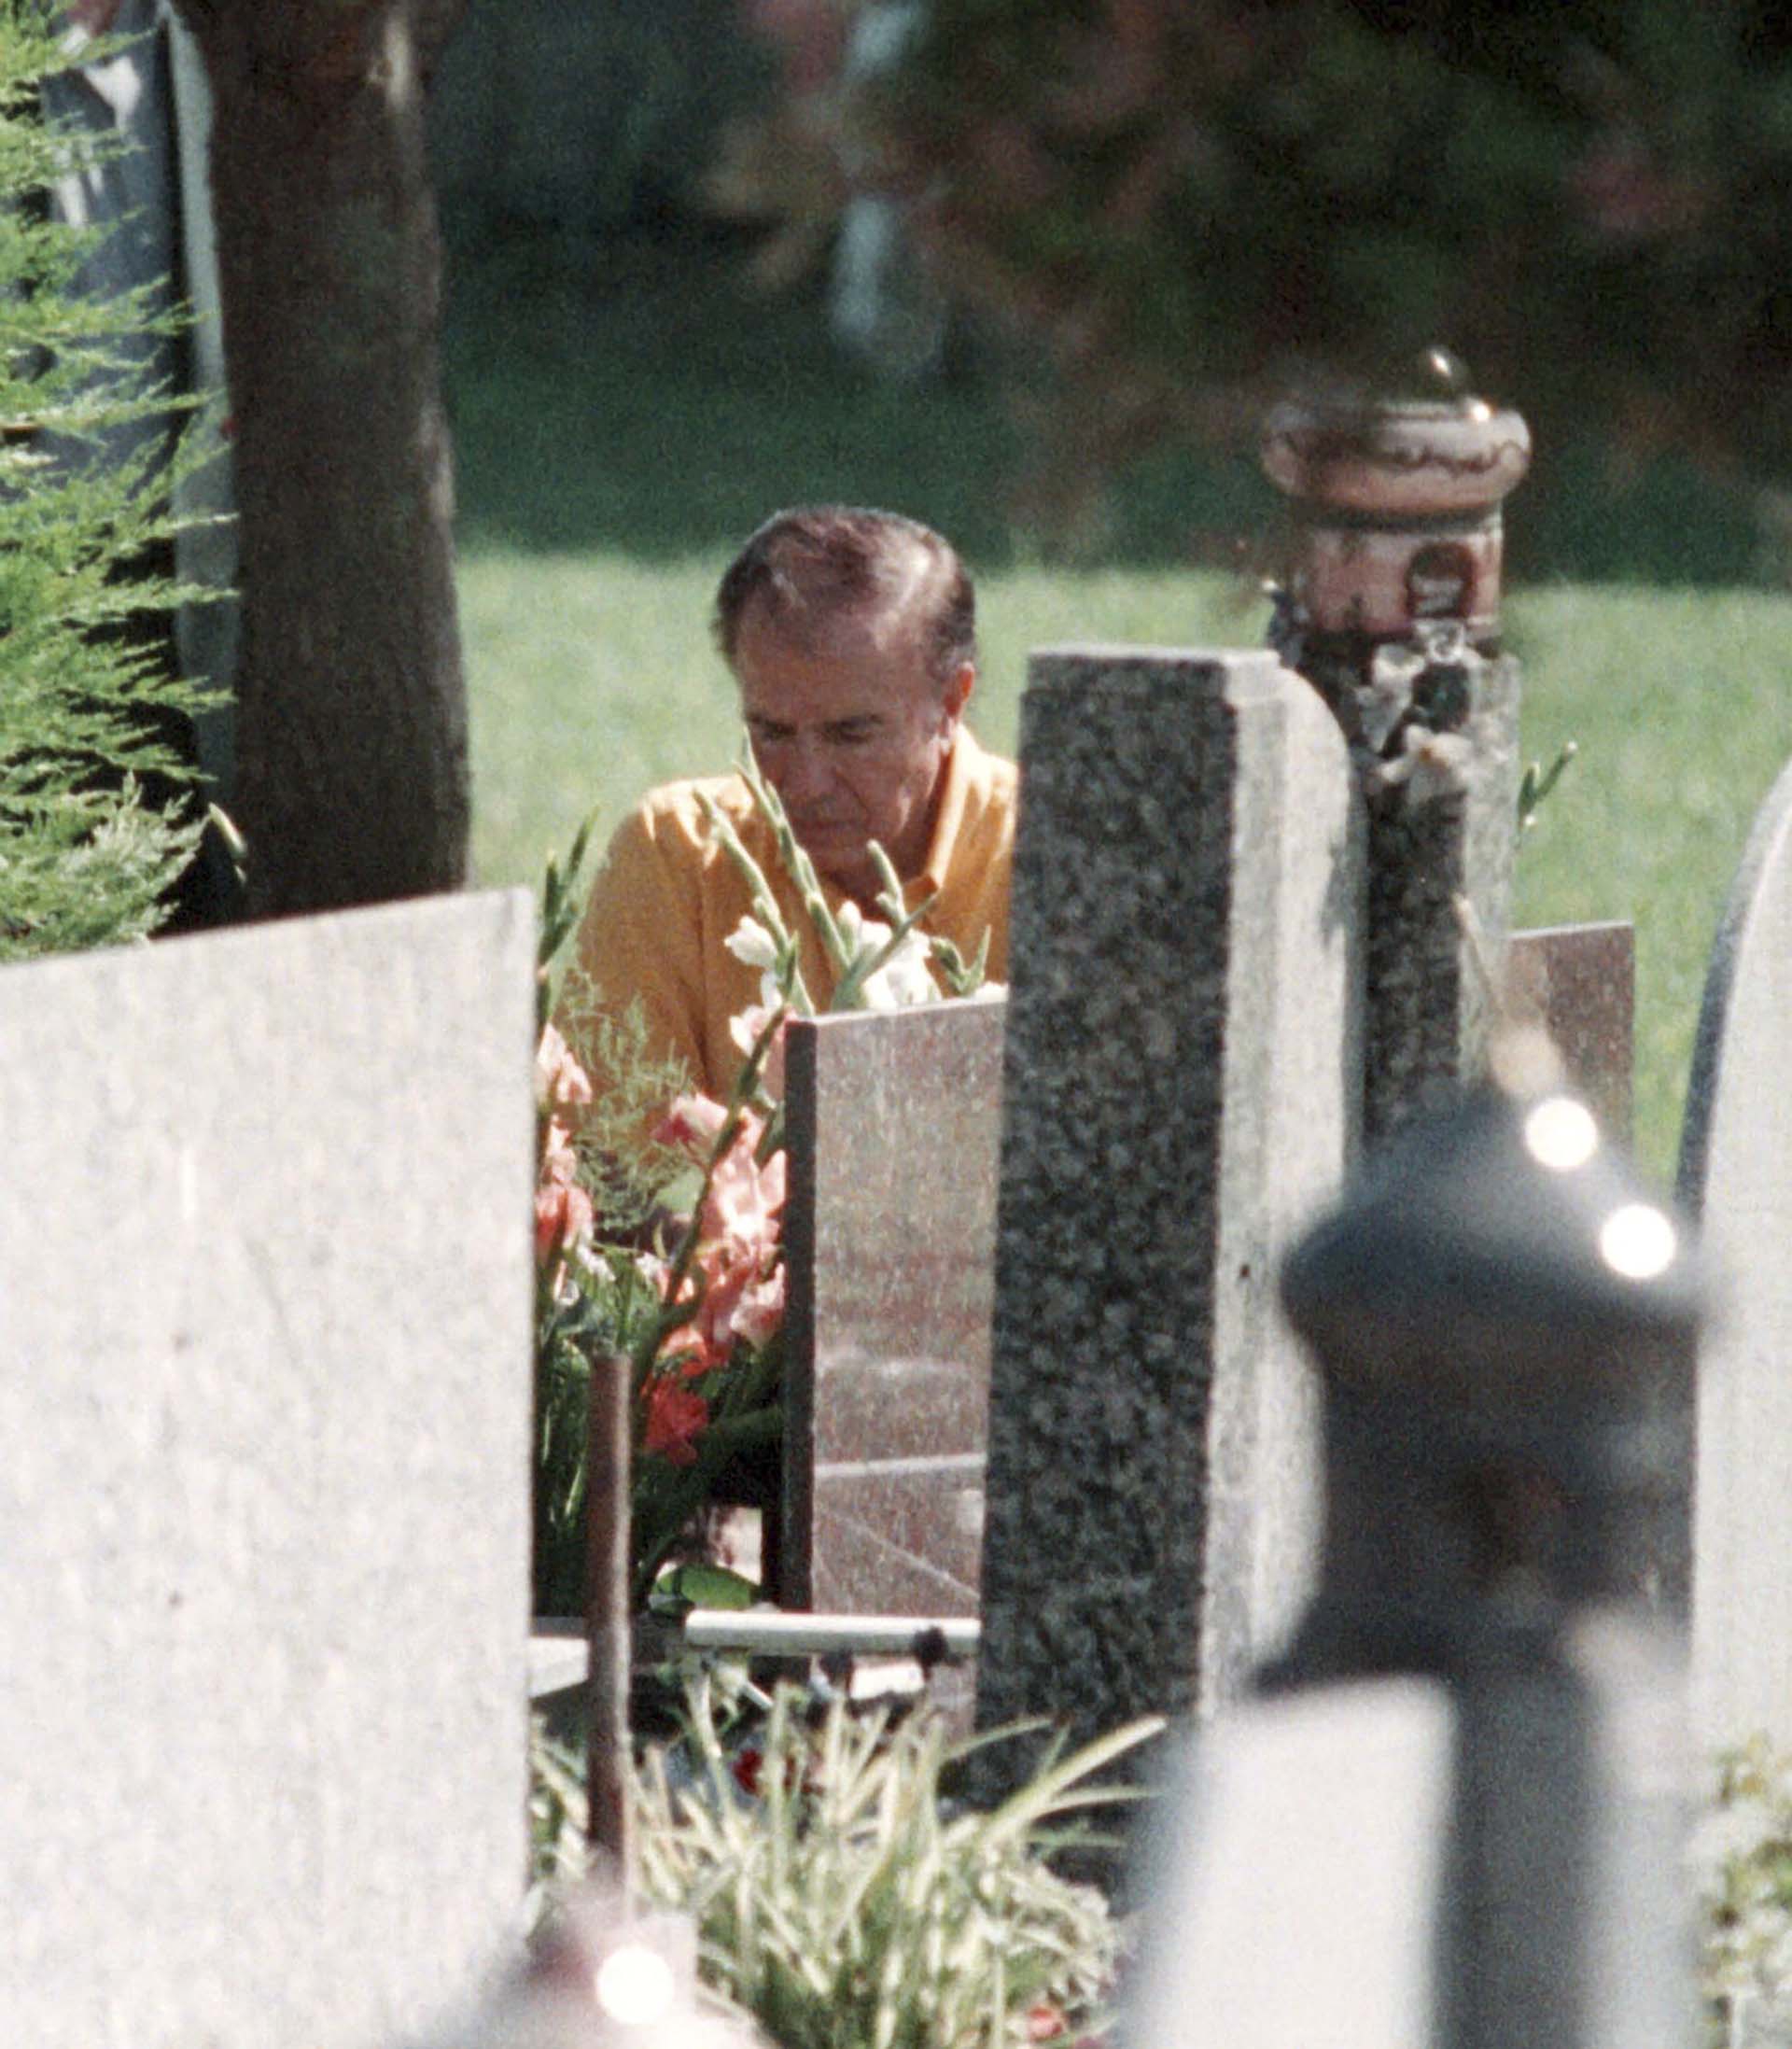 Al celebrarse el décimo sexto aniversario de la muerte de su hijo, Carlos Menem visitó su tumba en el cementerio islámico de San Justo. Por entonces, el ex mandatario aseguró que sabía quienes habían asesinado a su hijo y pidió que se reabriera la causa. Todo un cambio de postura en relación a la muerte de su primogénito